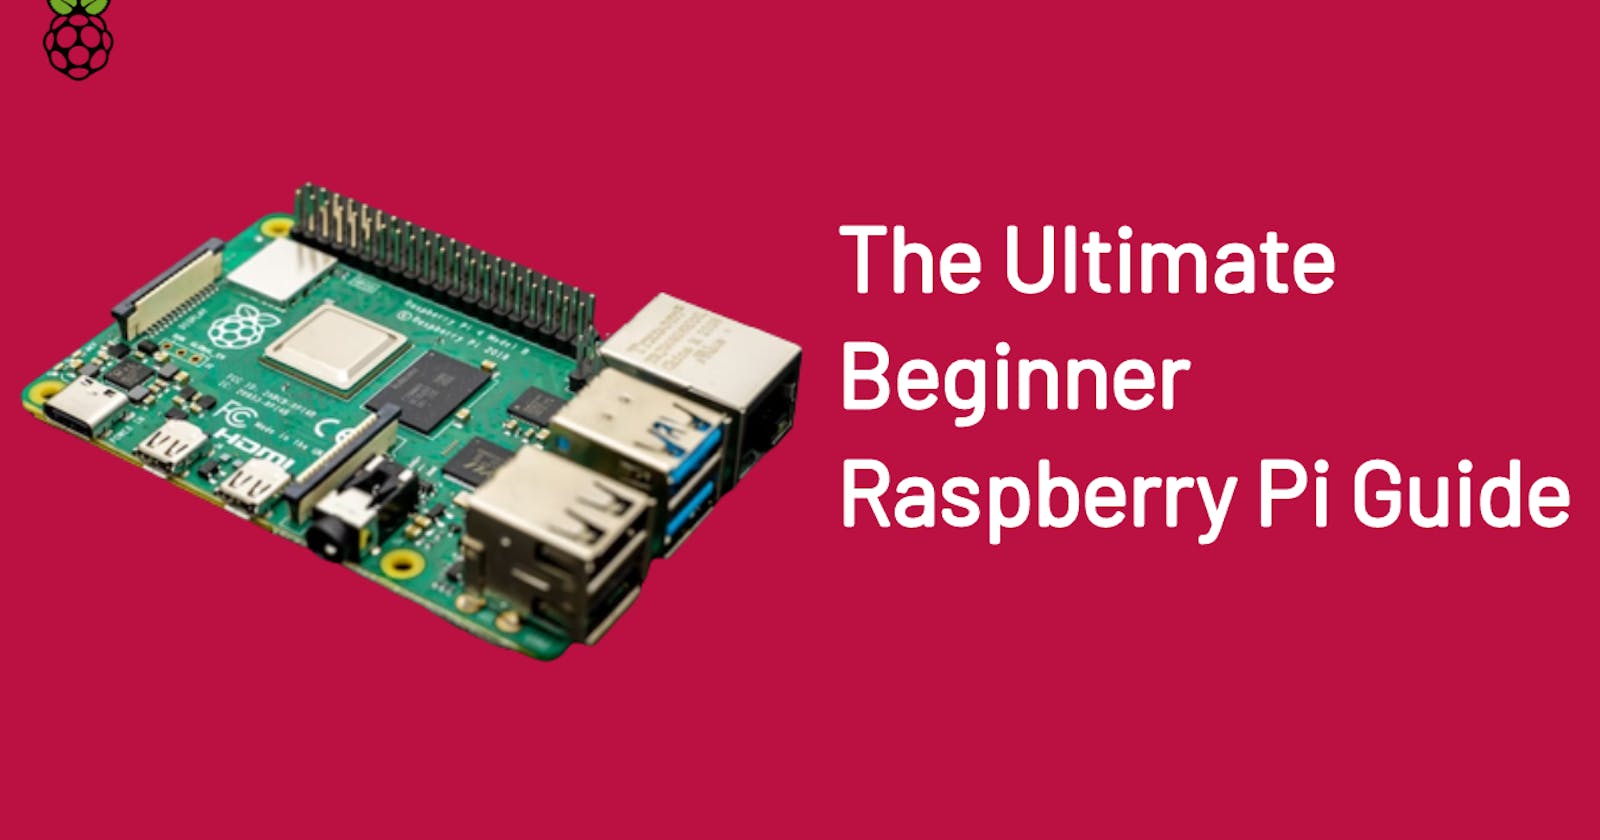 The Ultimate Beginner Raspberry Pi Guide